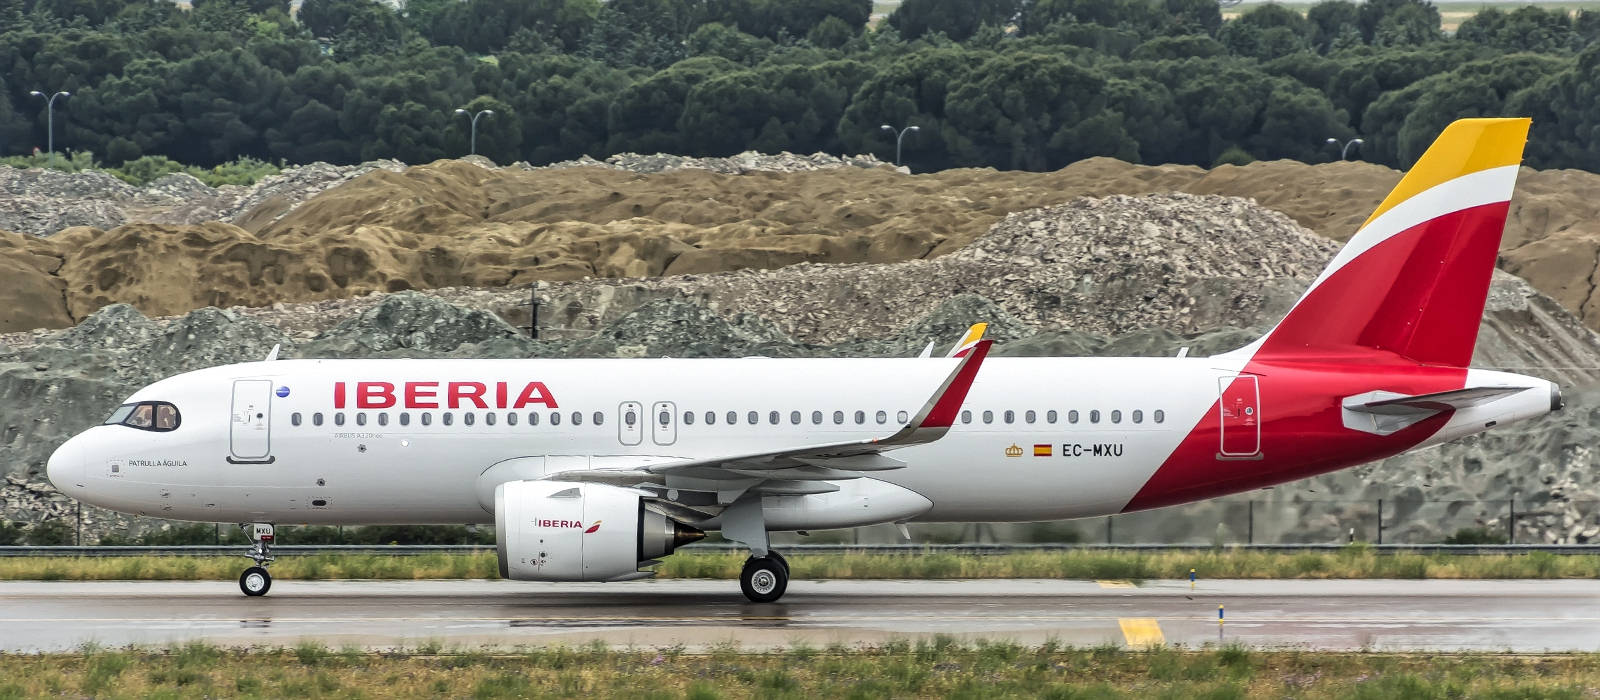 Iberiaairlines Flugzeug Seitenansicht Auf Startbahn Wallpaper